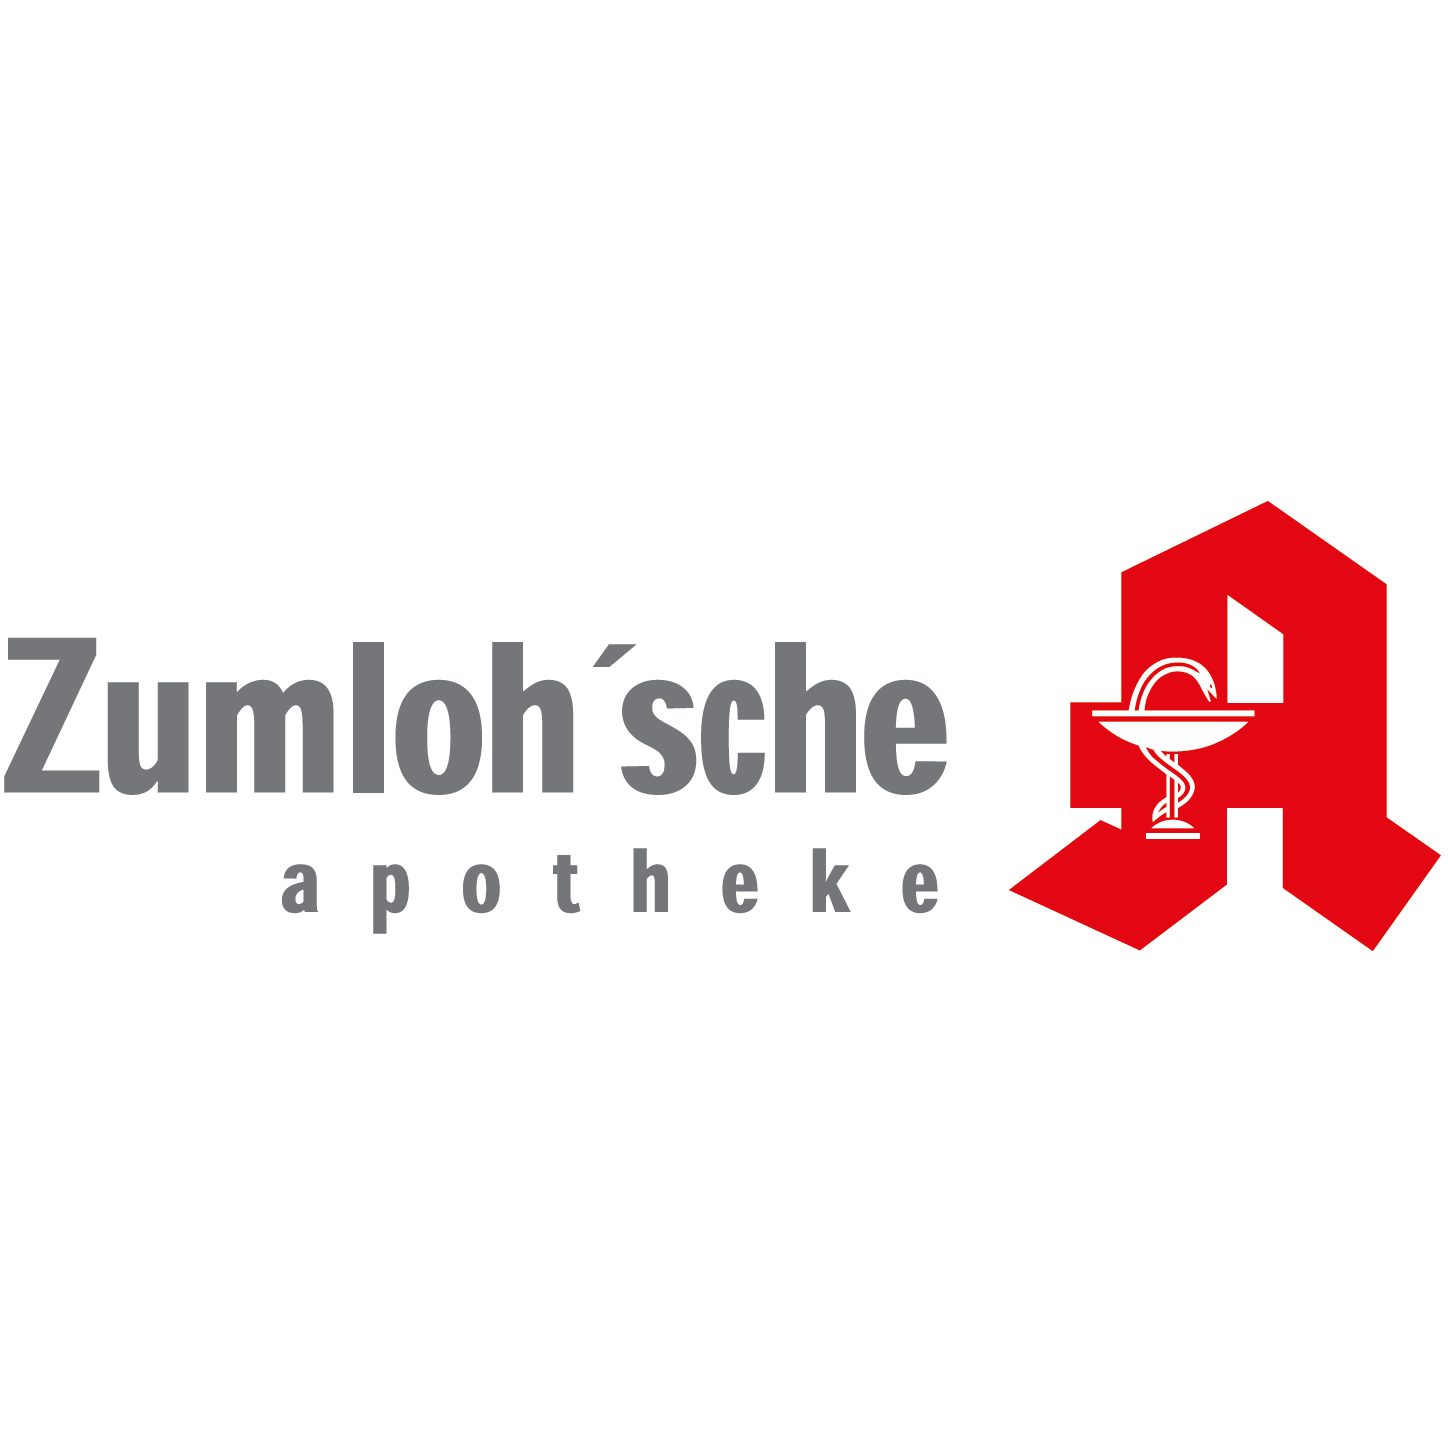 Zumlohsche-Apotheke in Neuenkirchen Vörden - Logo